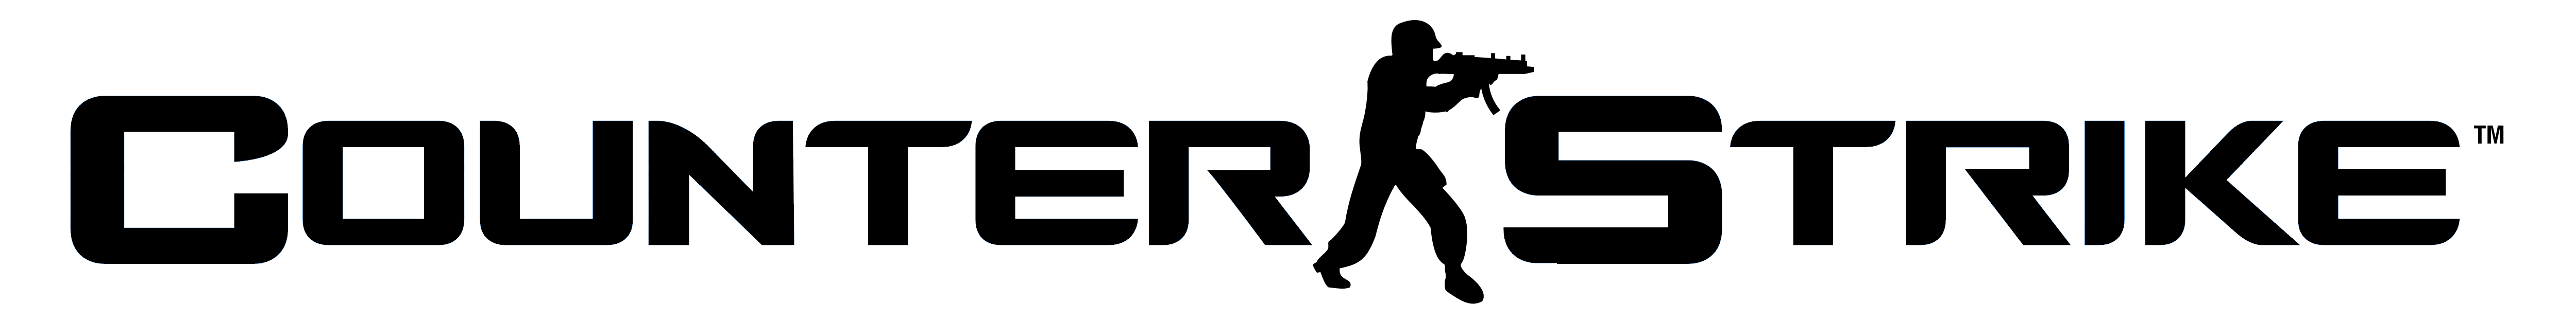 Counter-Strike Logo - Counter-Strike – Logos Download